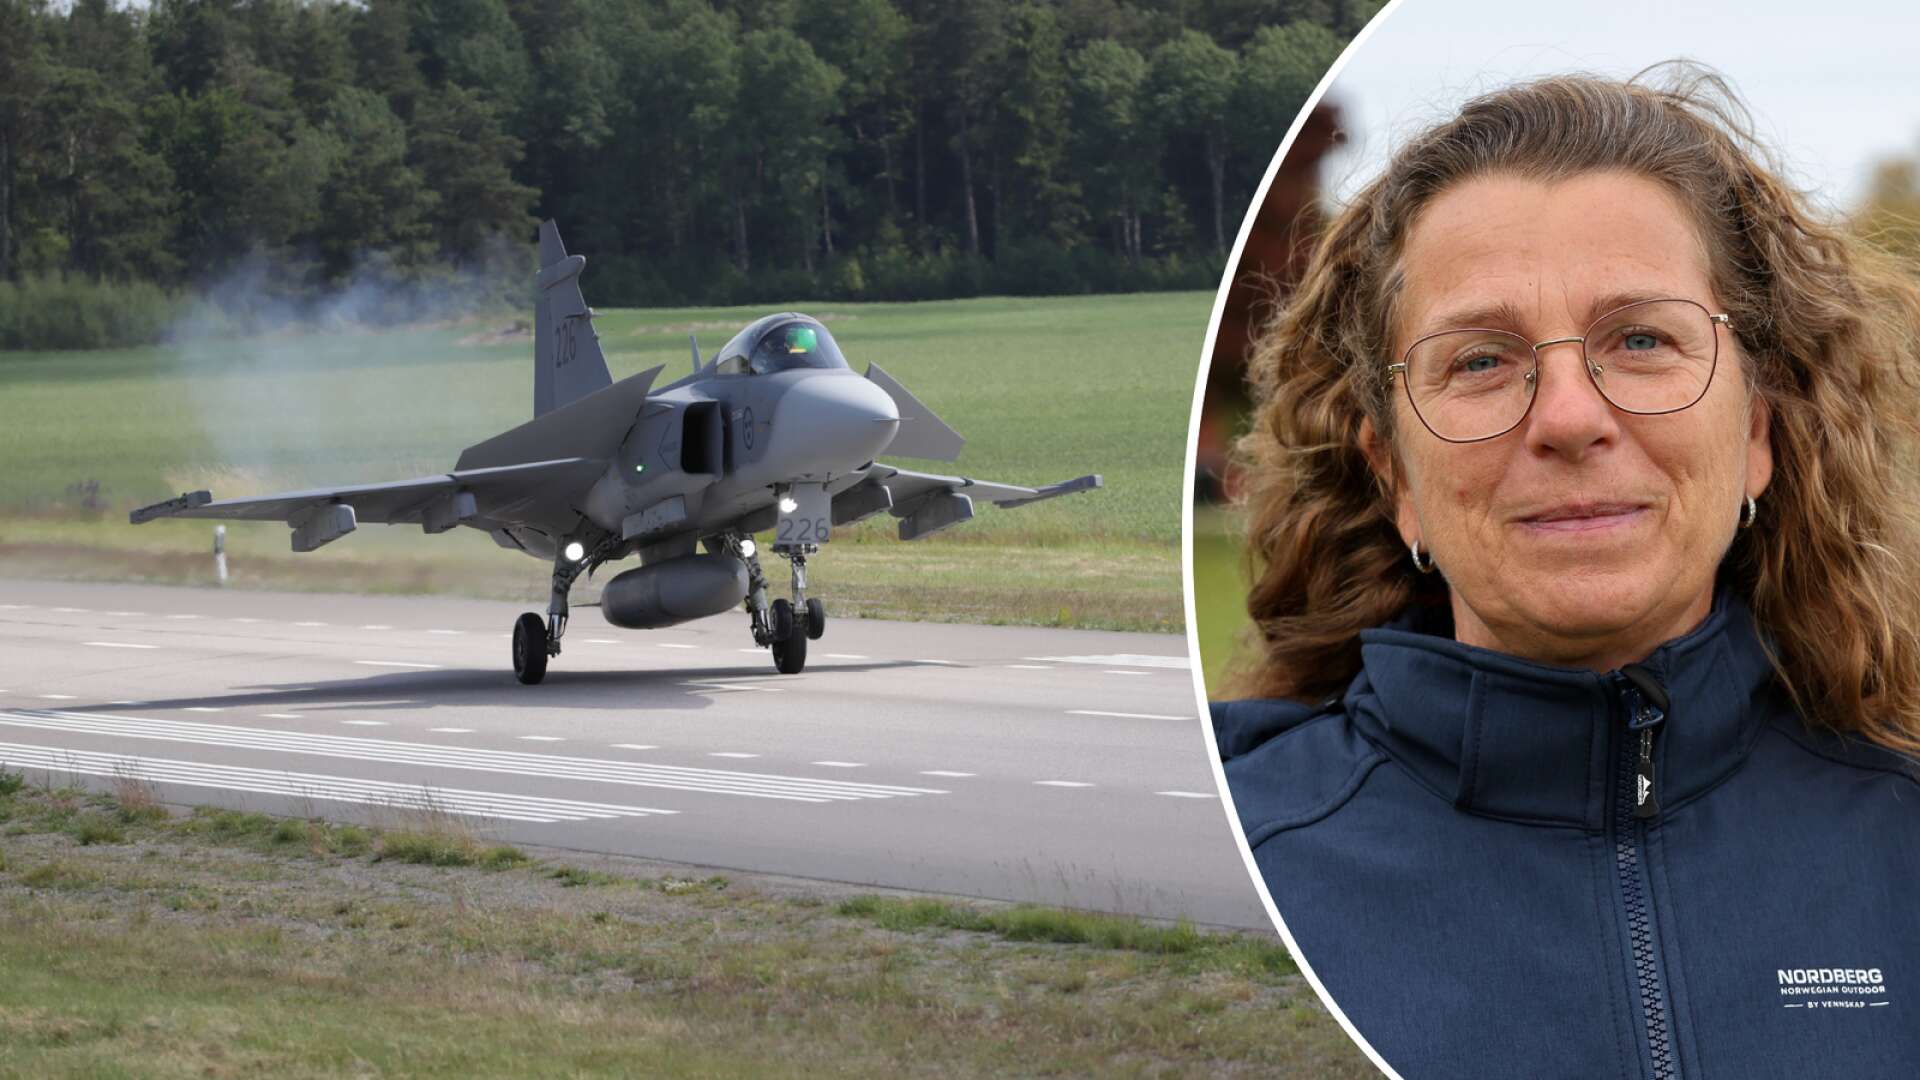 Lena Bogren på Skaraborgs flygflottilj vädjar: ”Kör väldigt försiktigt och kolla inte upp i luften”